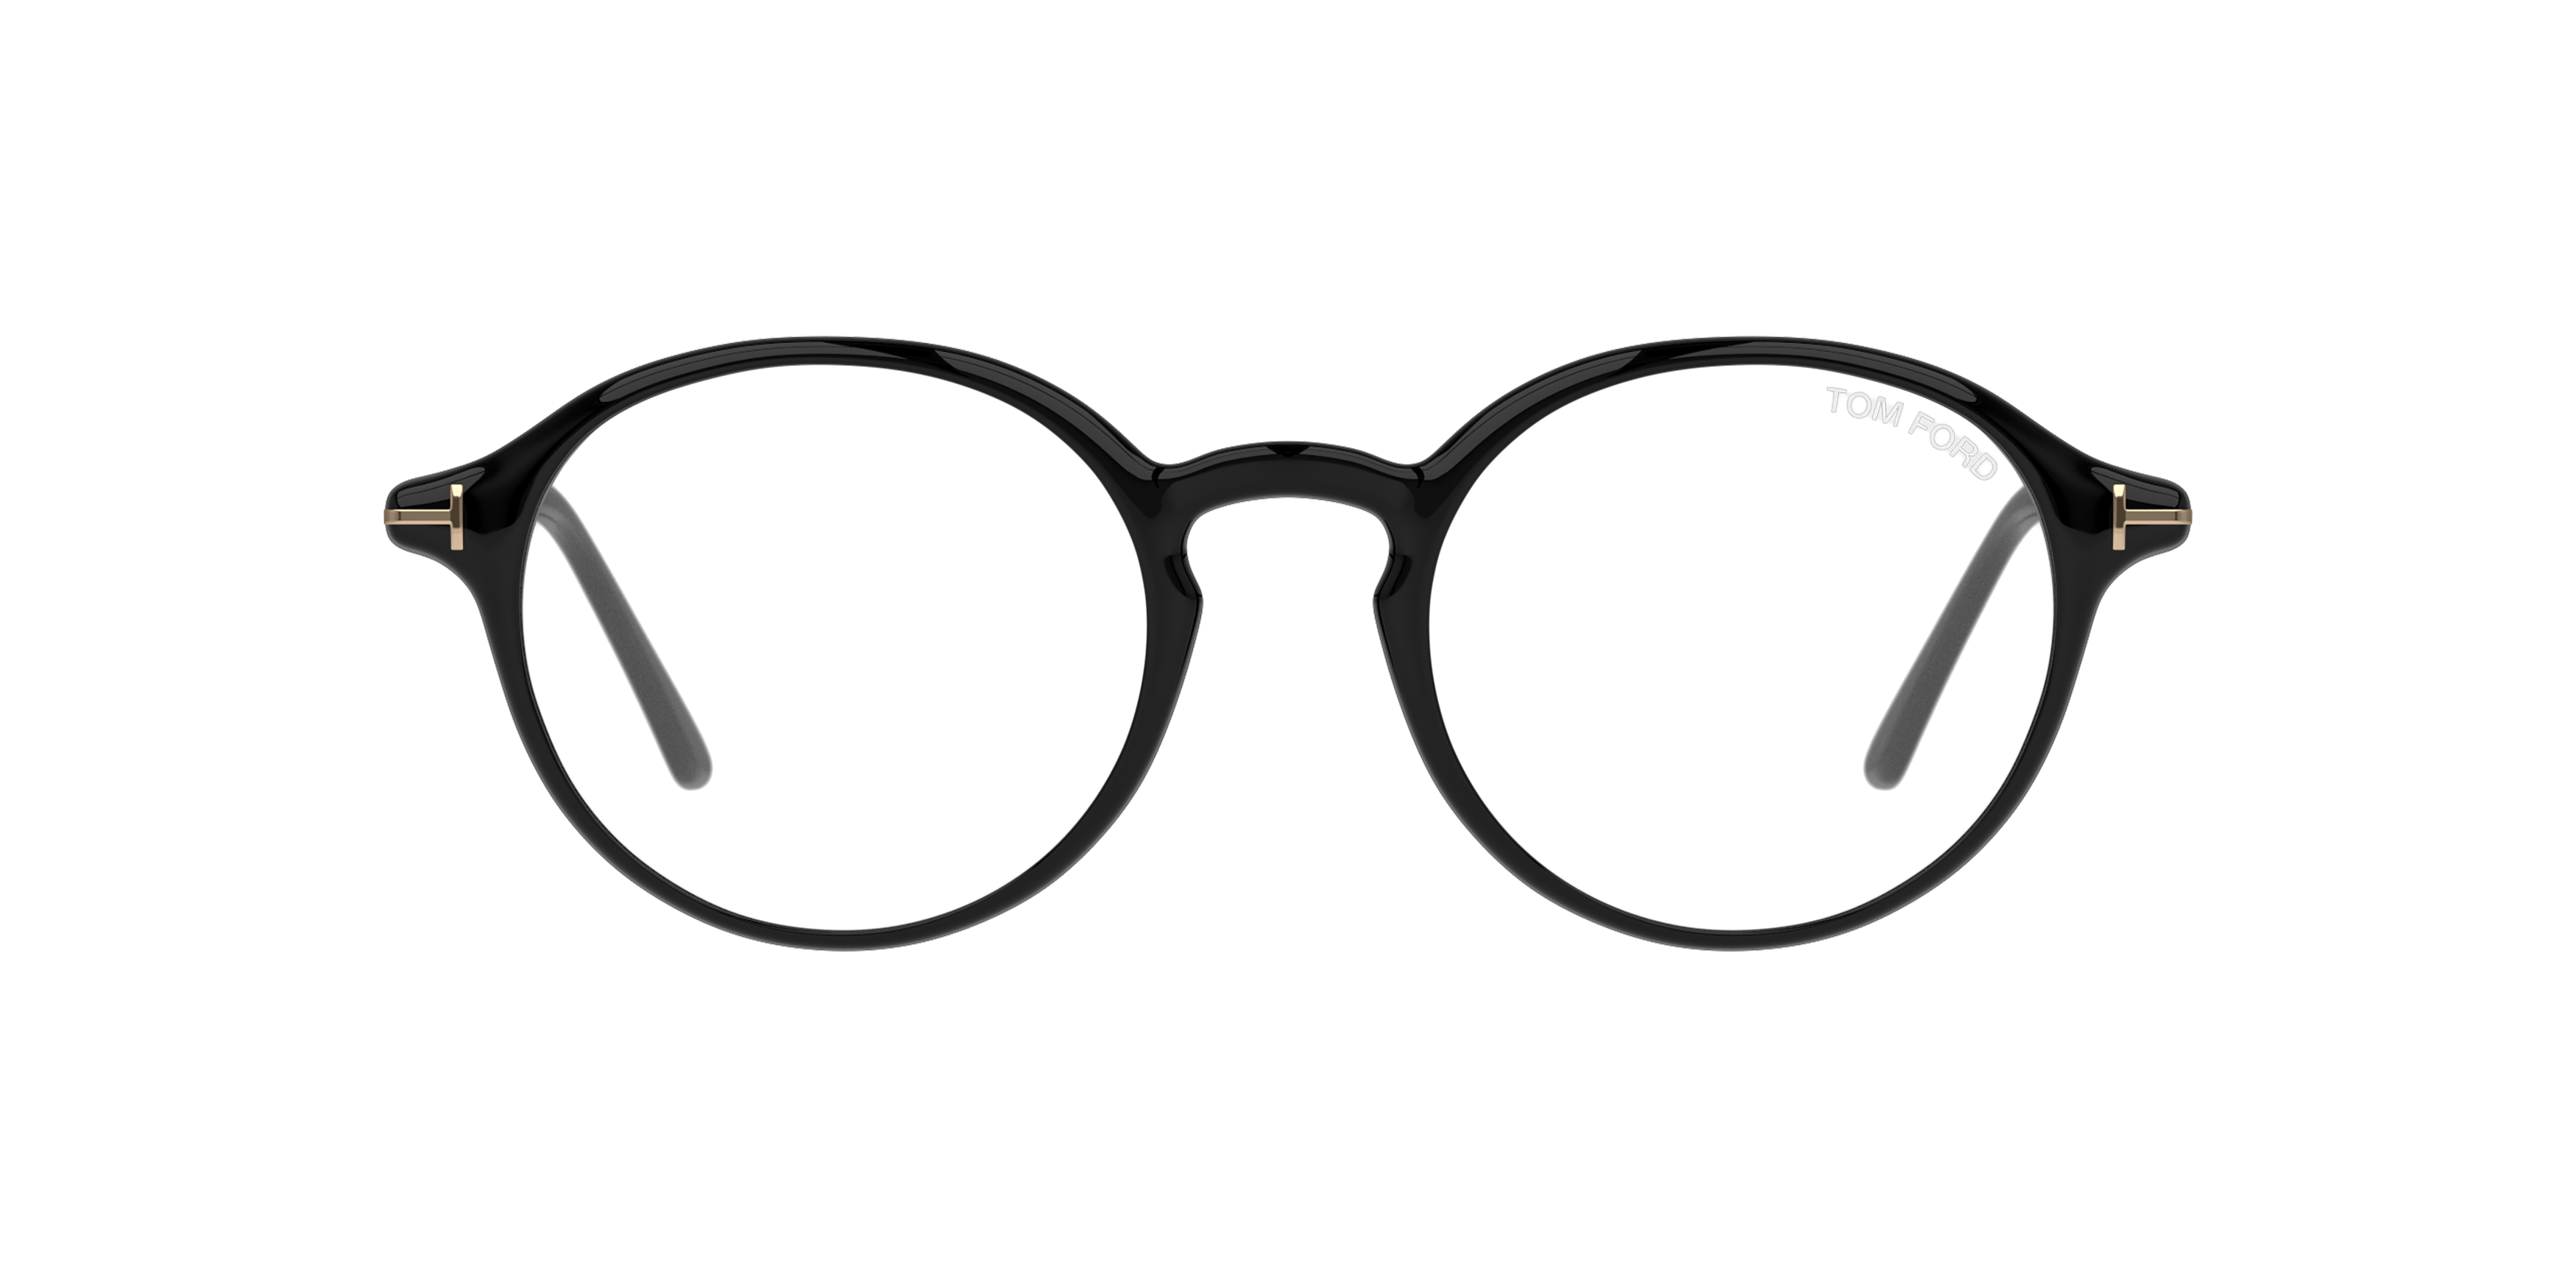 Vice fedt nok tankevækkende Tom Ford briller | Se eksklusive Tom Ford brillestel | Synoptik